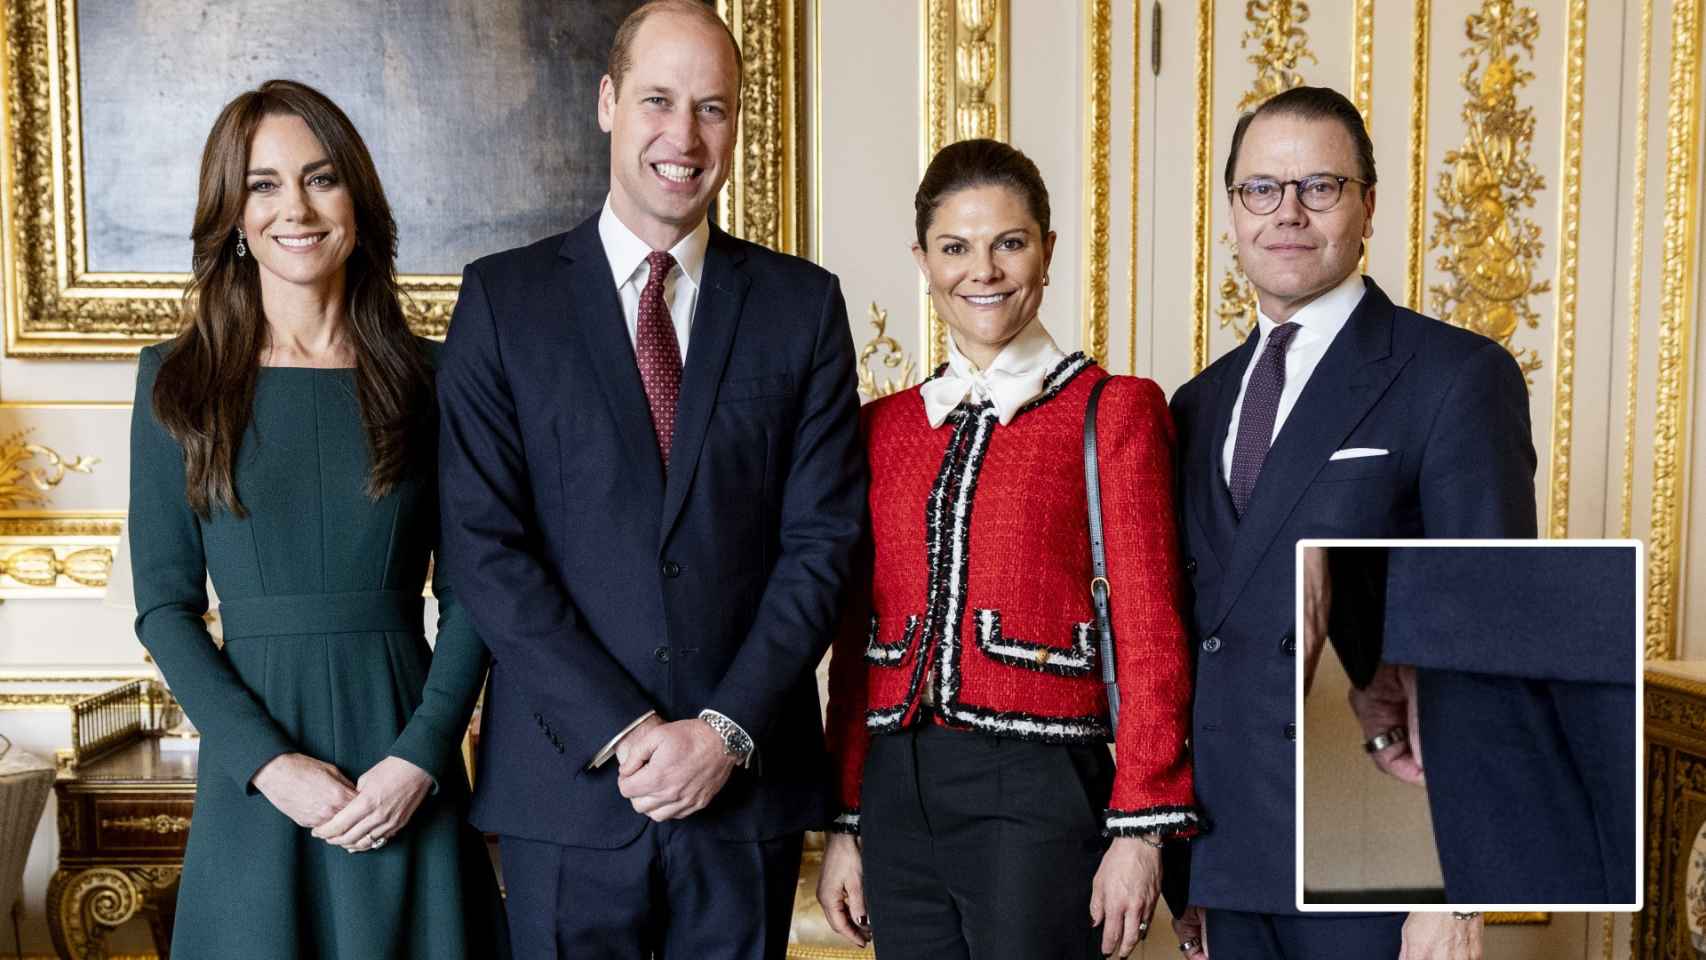 Montaje de EL ESPAÑOL del anillo de Daniel de Suecia y la imagen de Kate Middleton, el príncipe Guillermo, Victoria y Daniel de Suecia.